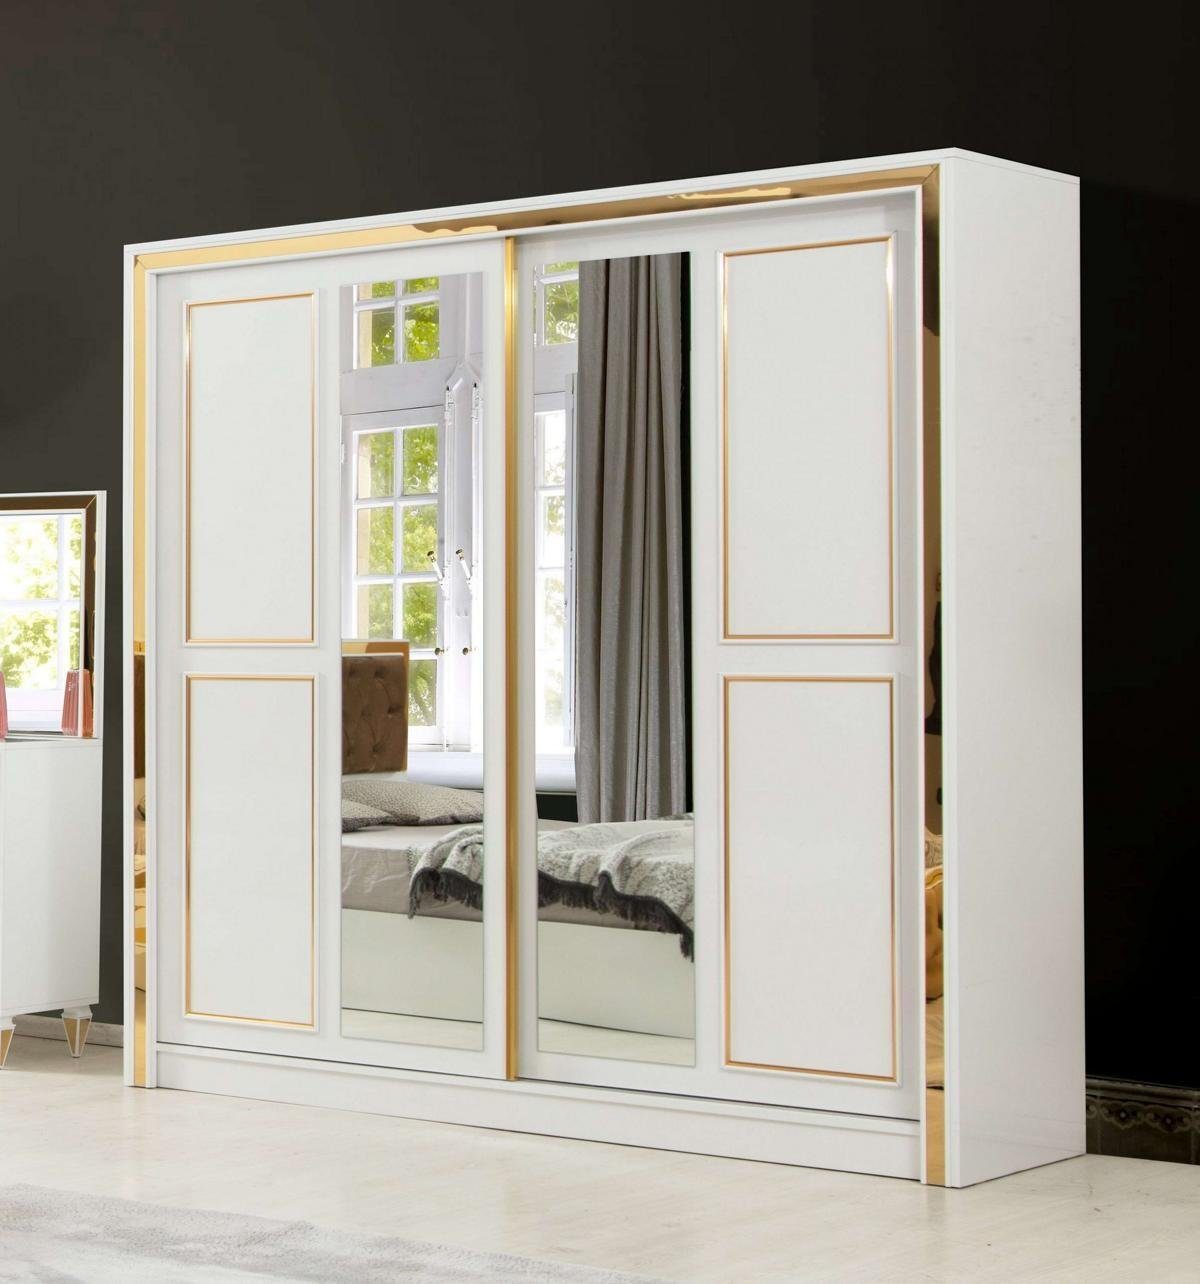 JVmoebel Kleiderschrank Weißer Moderner Kleiderschrank Luxus Designer Schlafzimmer Möbel Neu Made In Europe